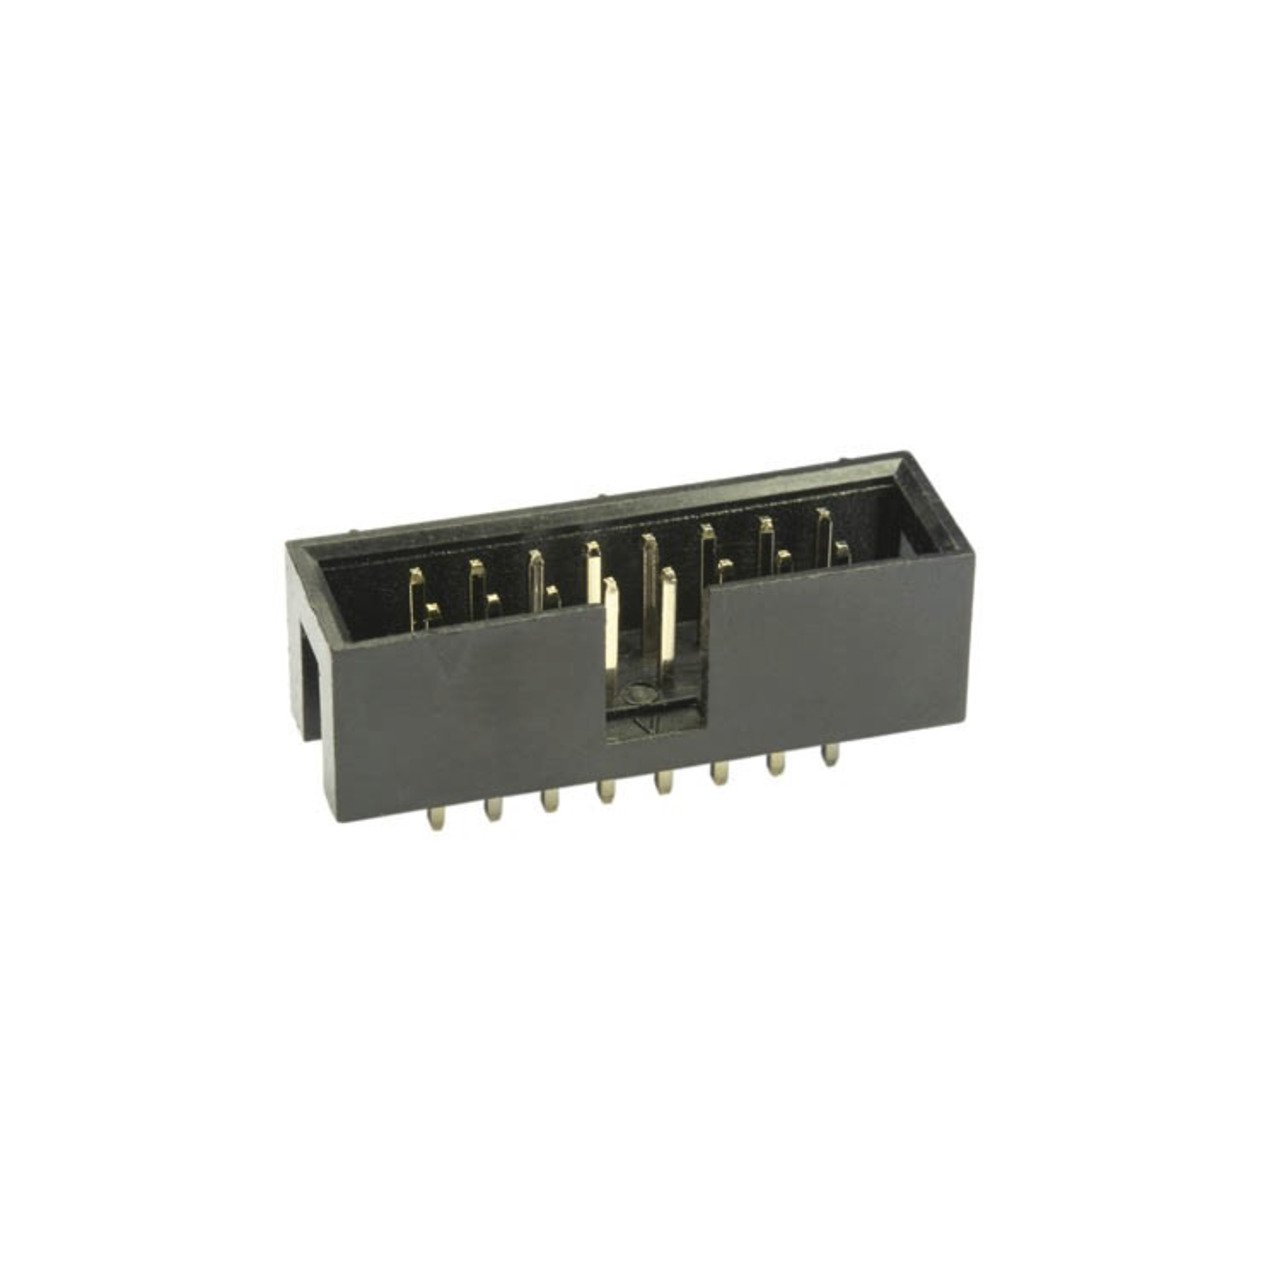 econ connect Wannensteckerleiste WS20G- 20-polig- gerade- RM 2-54 mm- ohne Verriegelung unter Komponenten